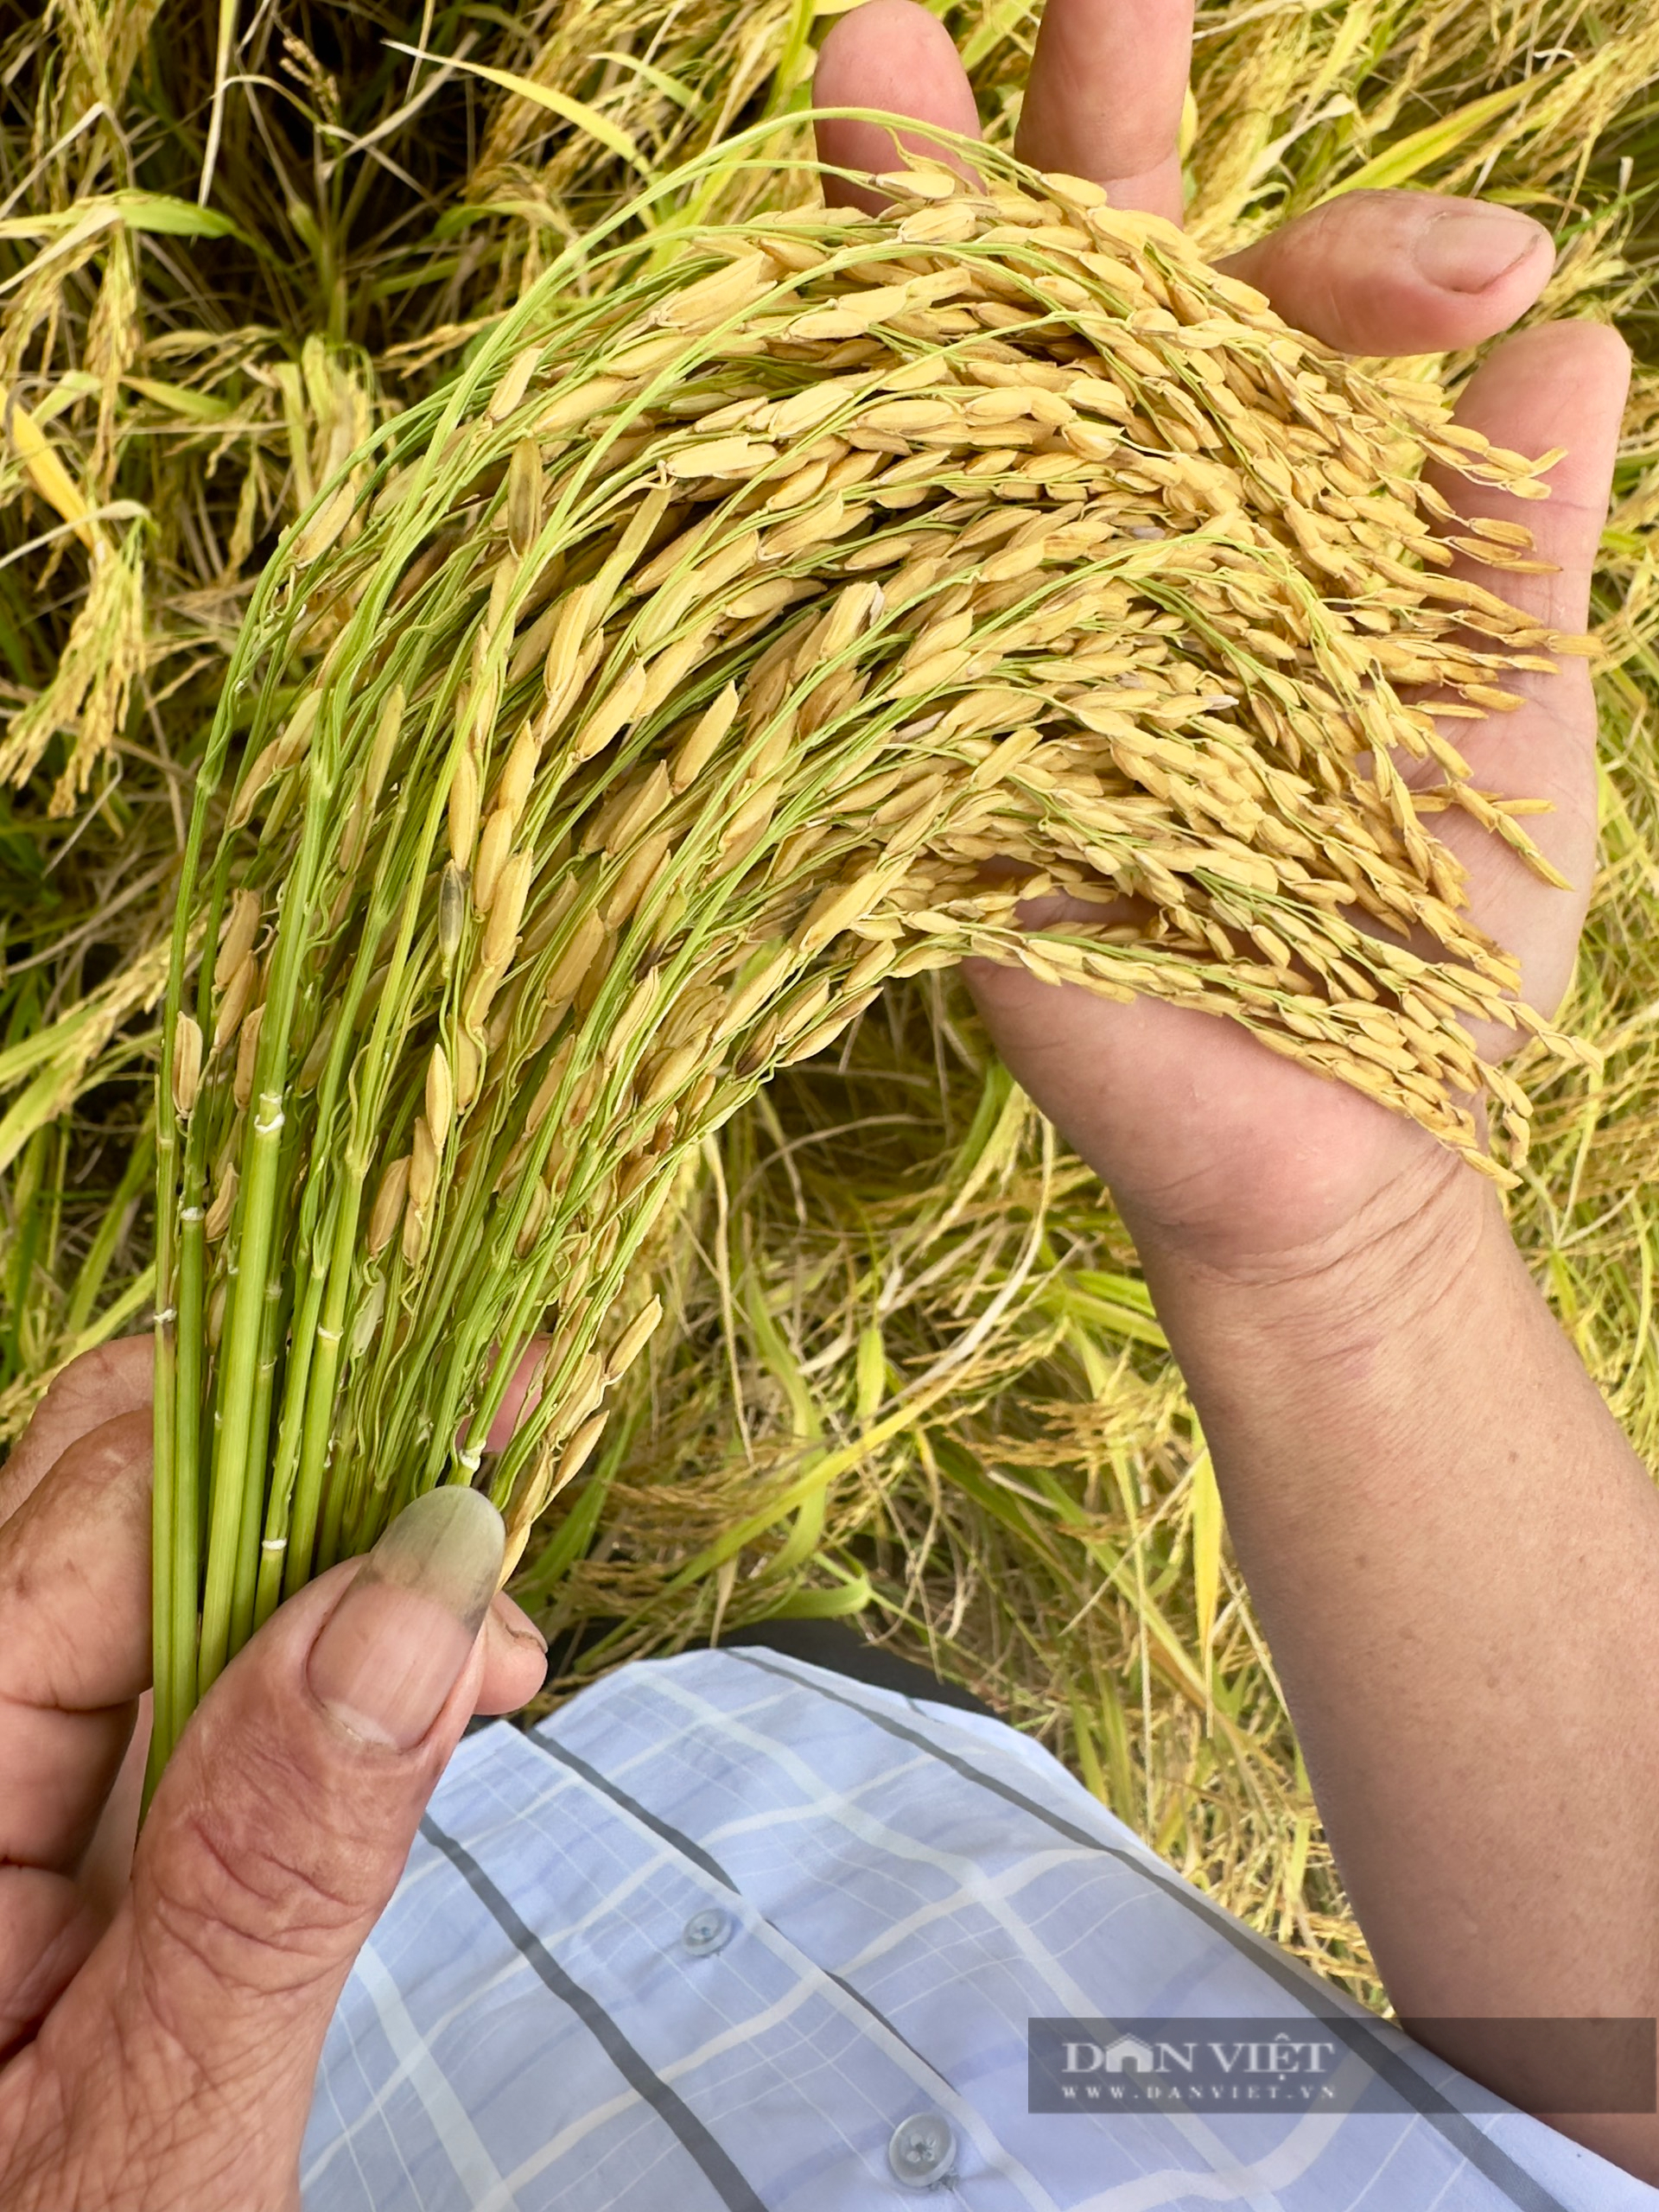 Một hợp tác xã ở Hậu Giang, trồng lúa kiểu mới thu lãi 36 triệu đồng/ha, lần đầu tiên còn bán được cả... báo cáo- Ảnh 3.